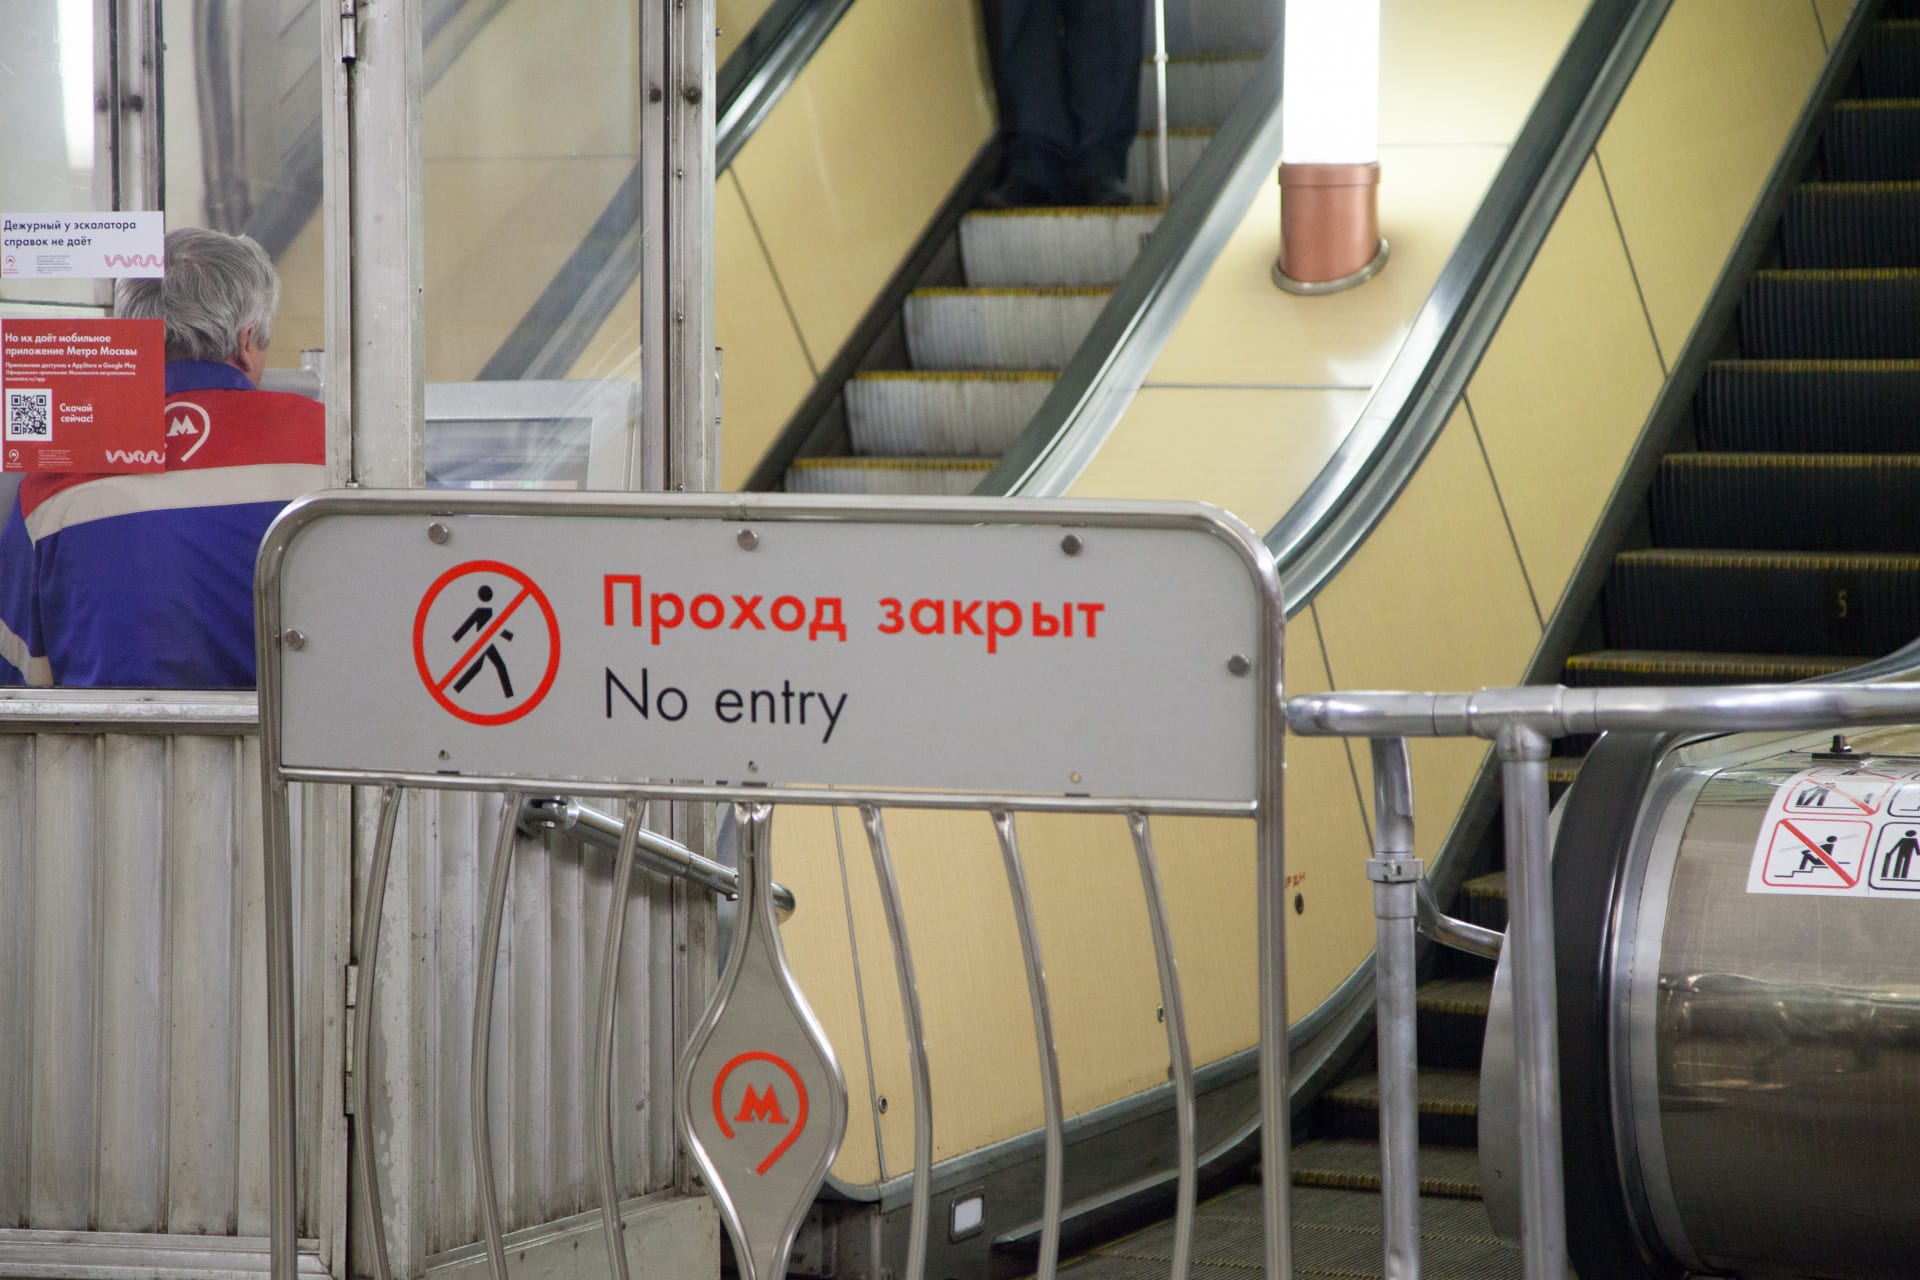 Каховская линия метро закрыта с 26 октября 2019: причина